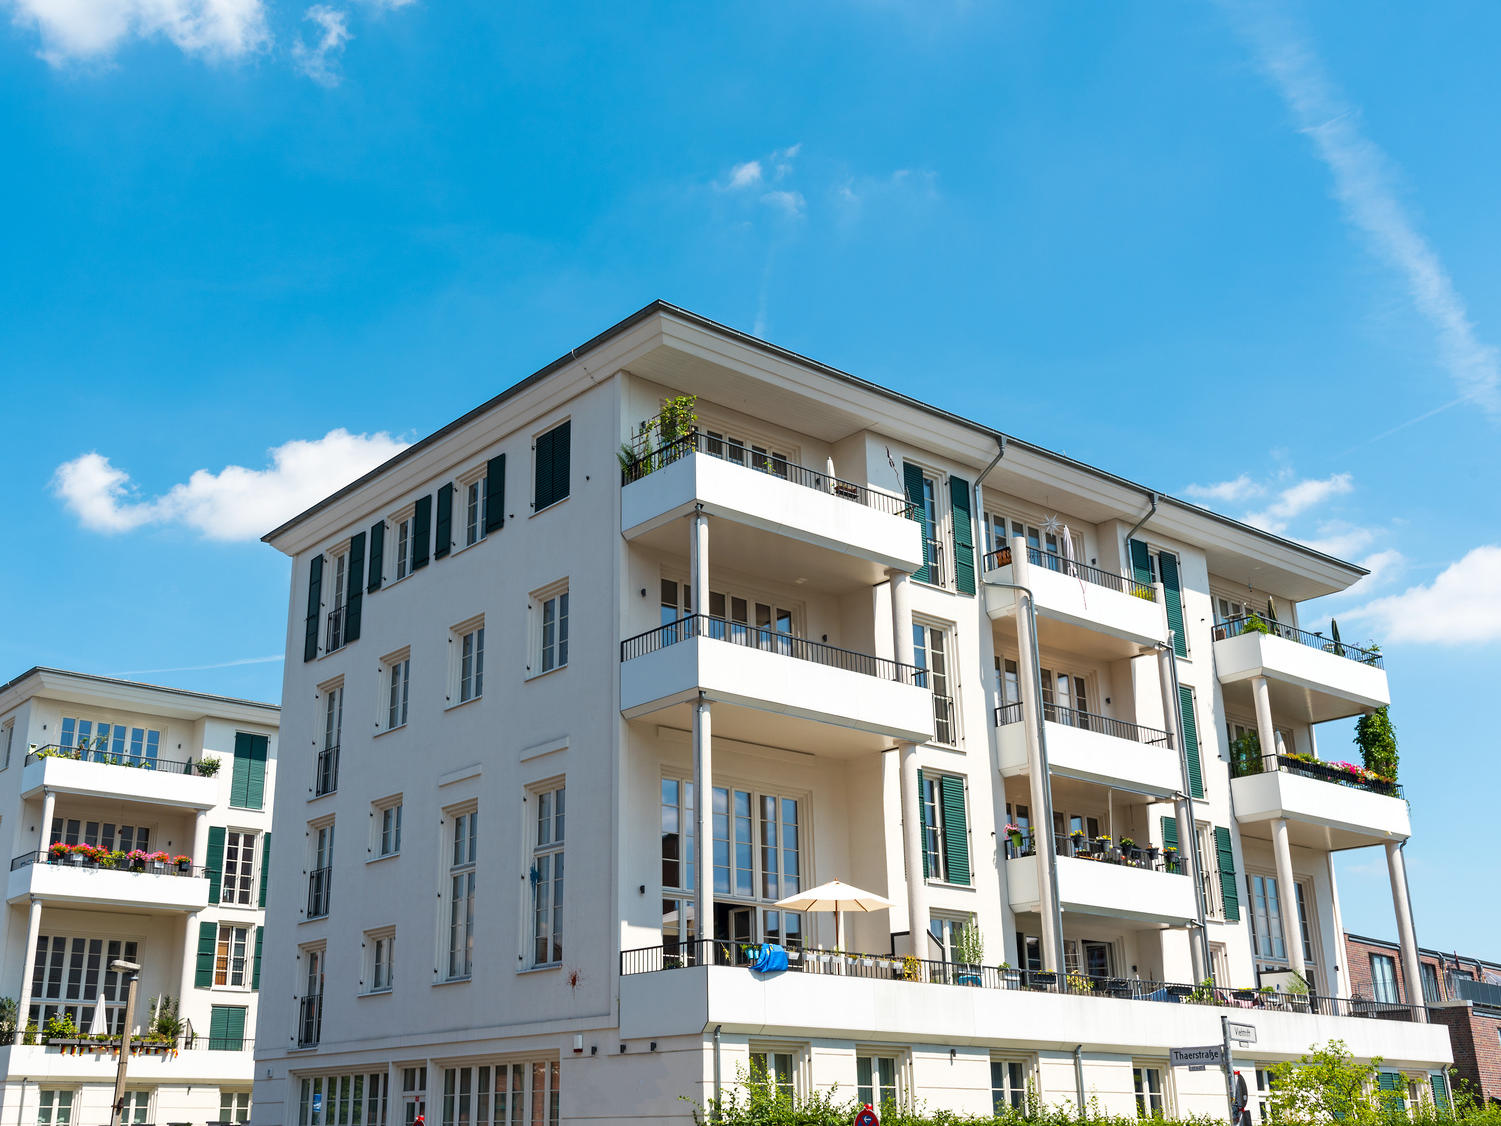 Mehrfamilienhaus mit 6 Wohnungen - schlüsselfertig bauen im Raum Hamburg, Kiel, Neumünster, Norderstedt